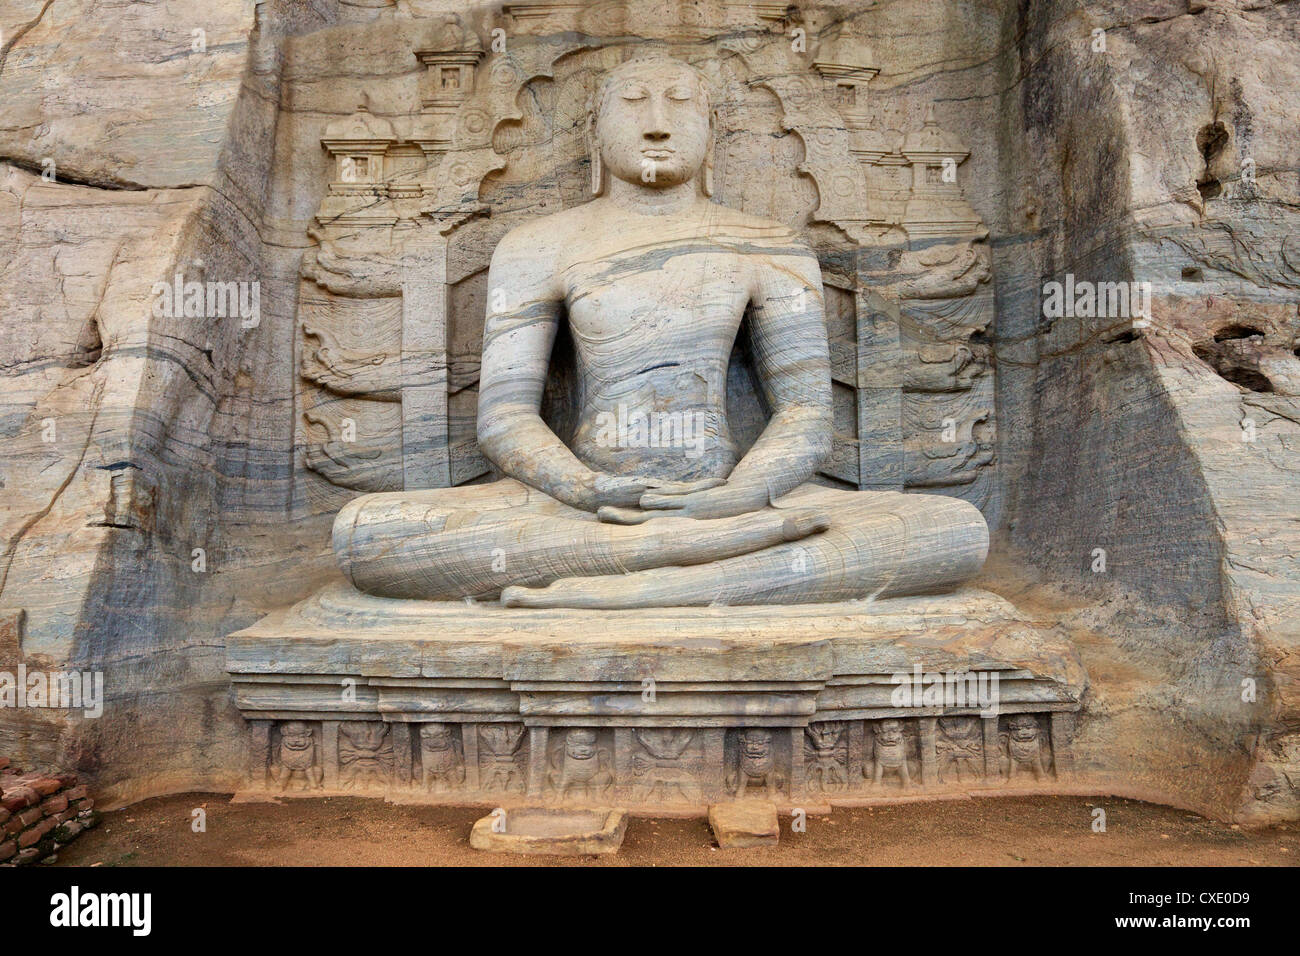 Buddha in meditation, Gal Vihara Rock Temple, Polonnaruwa, Sri Lanka, Asia Stock Photo